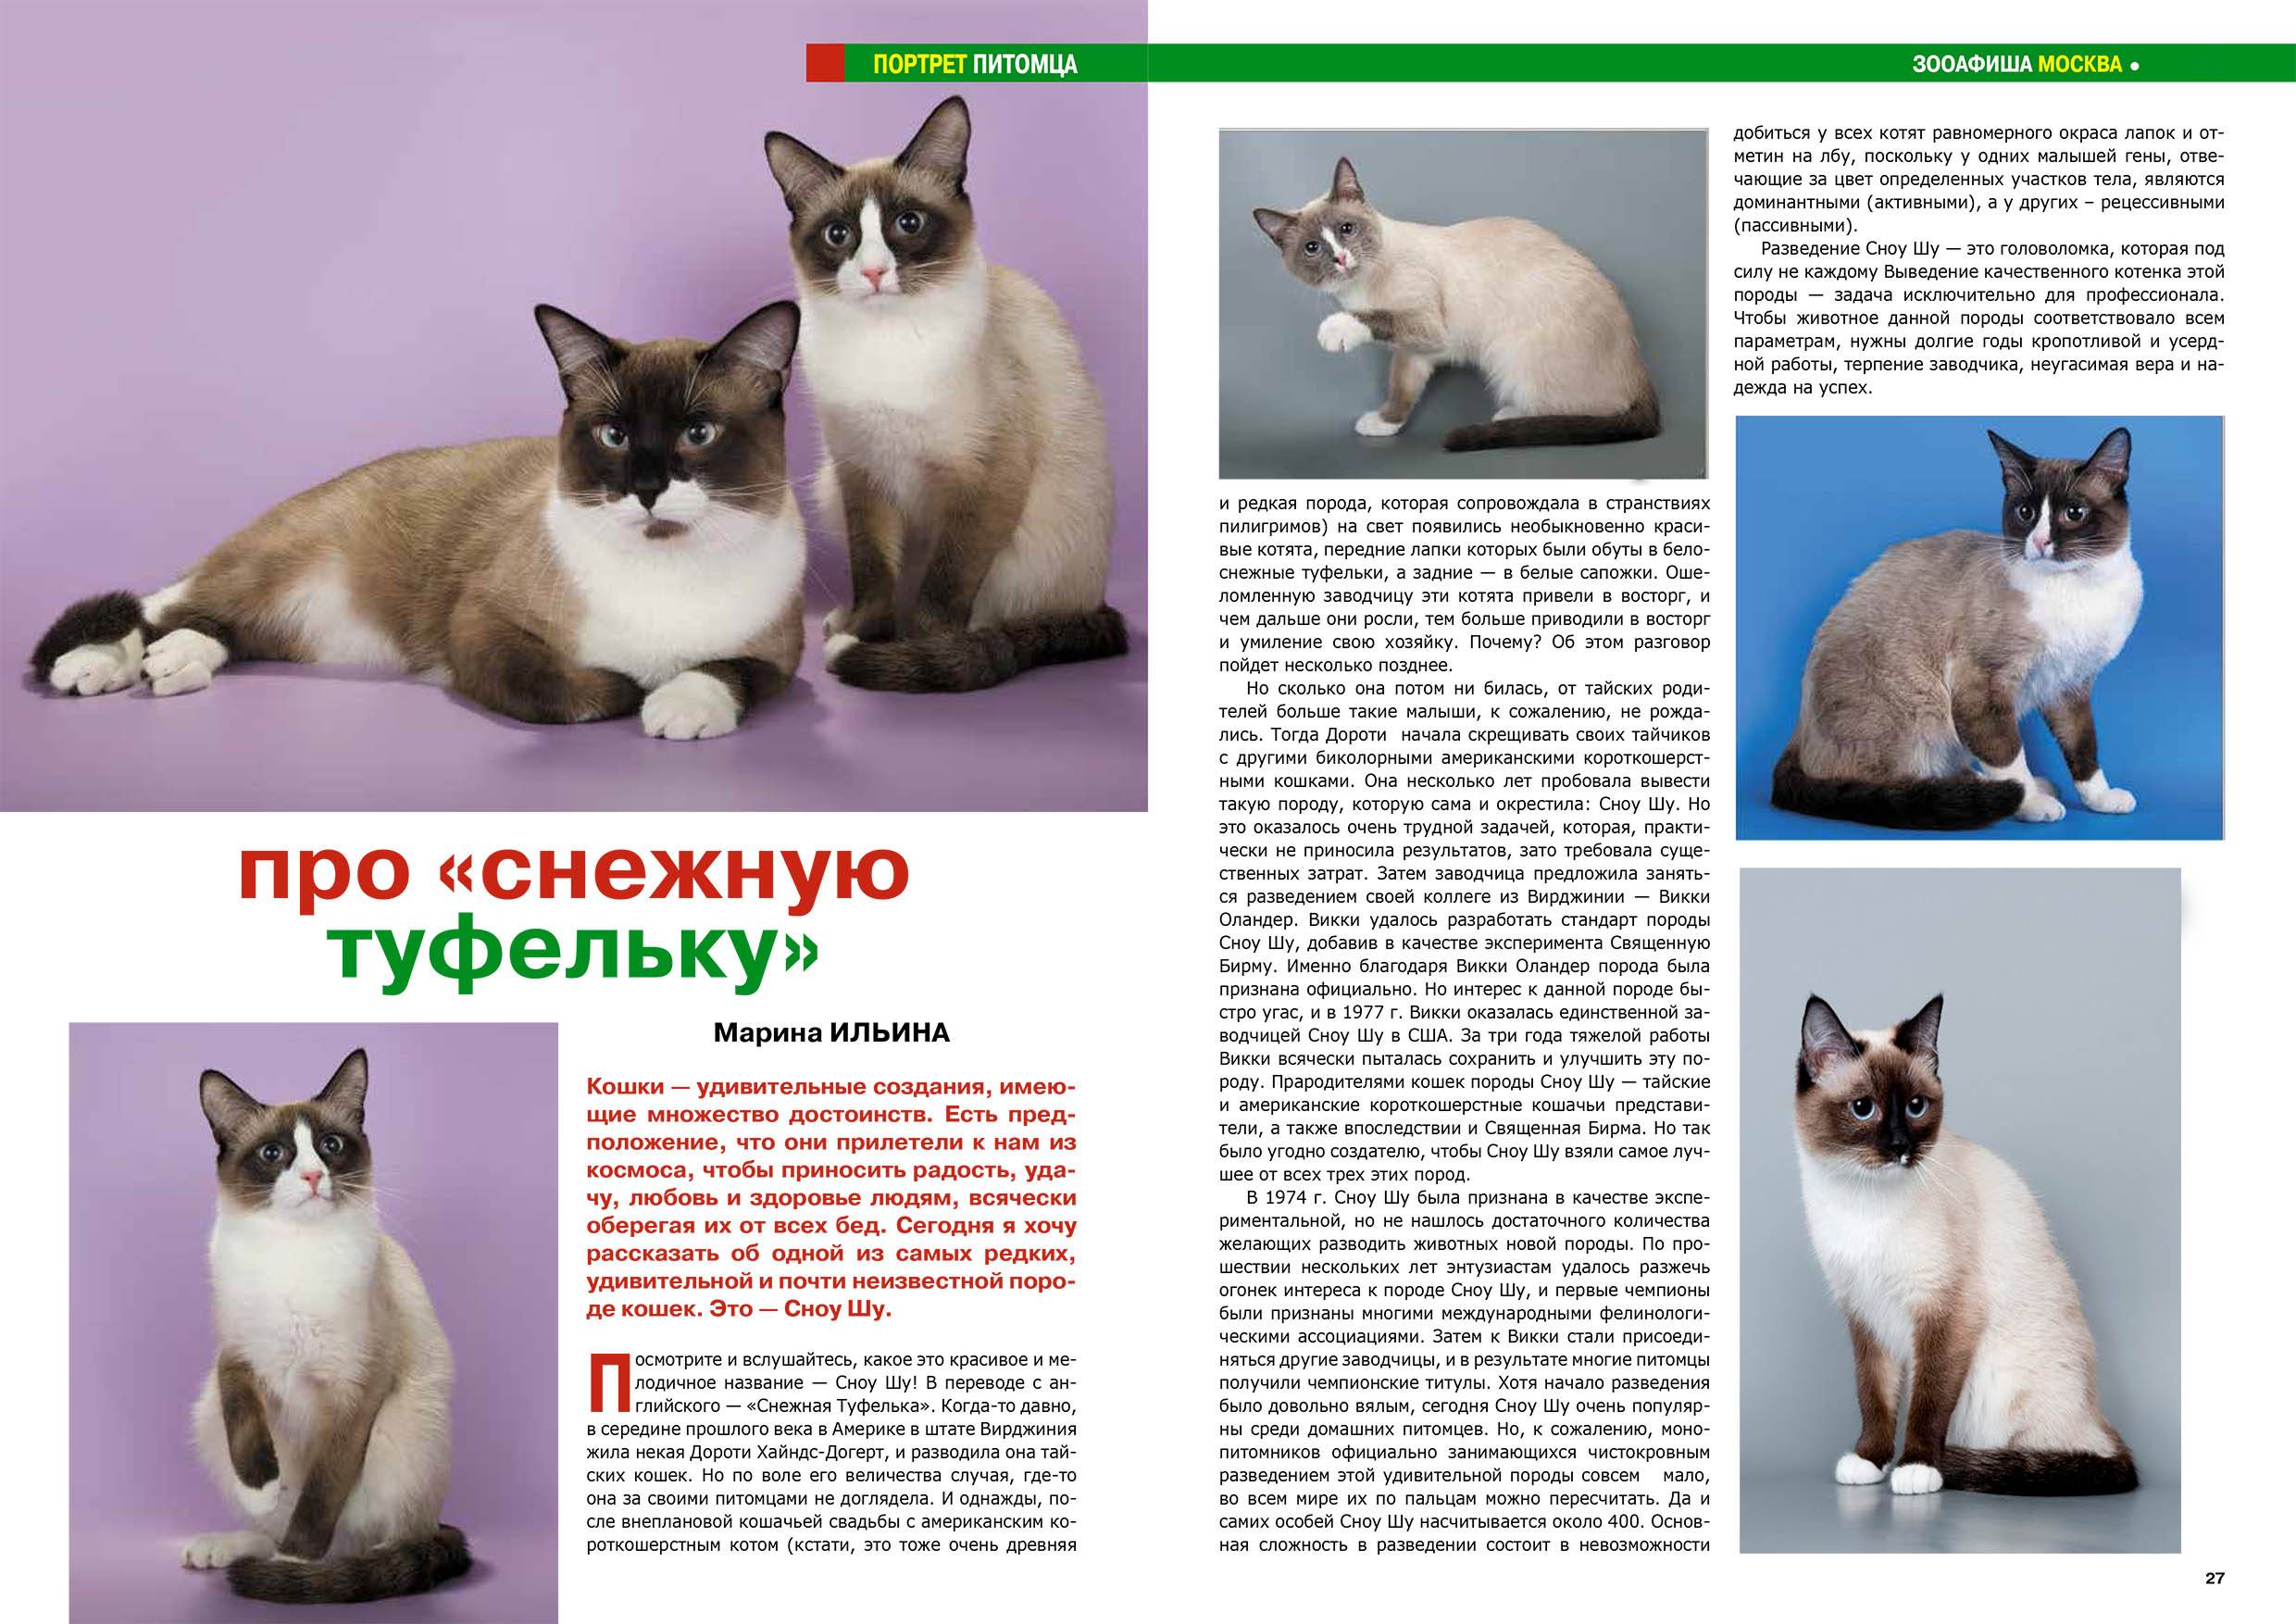 Тайская кошка: сколько живет, описание породы и характера, особенности воспитания тайского котенка